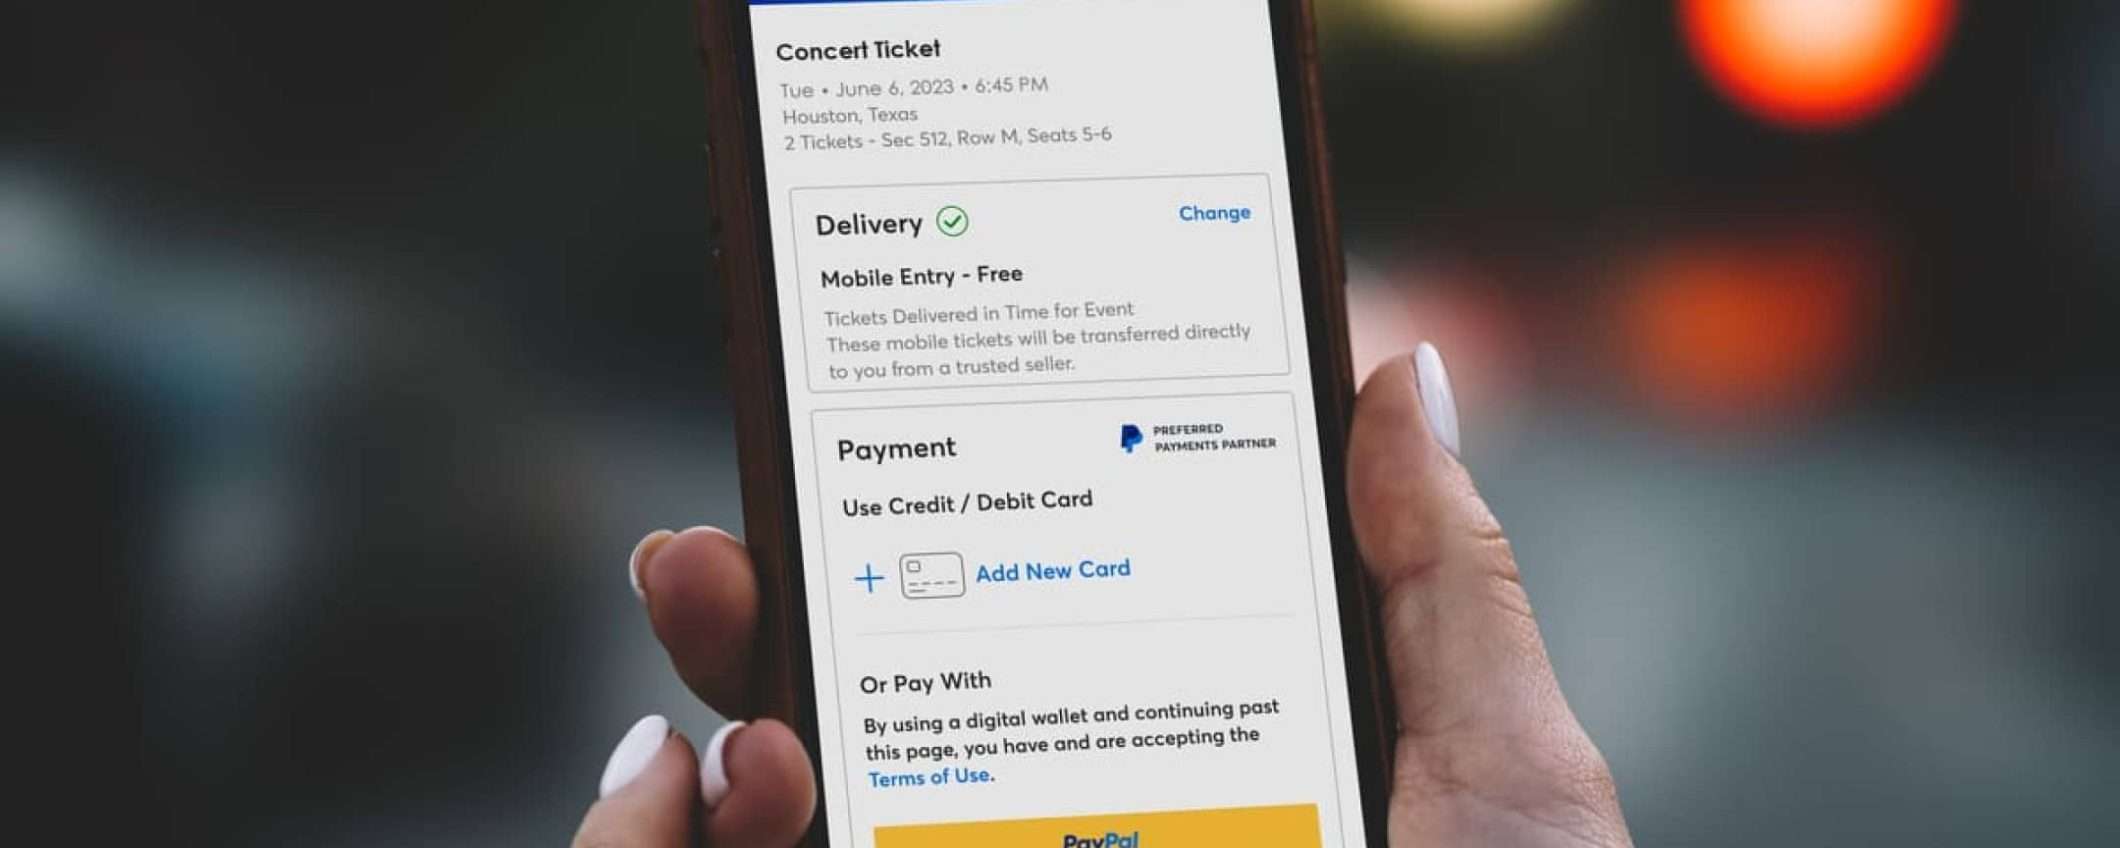 PayPal: pagamenti sicuri e a rate per concerti grazie a Ticketmaster